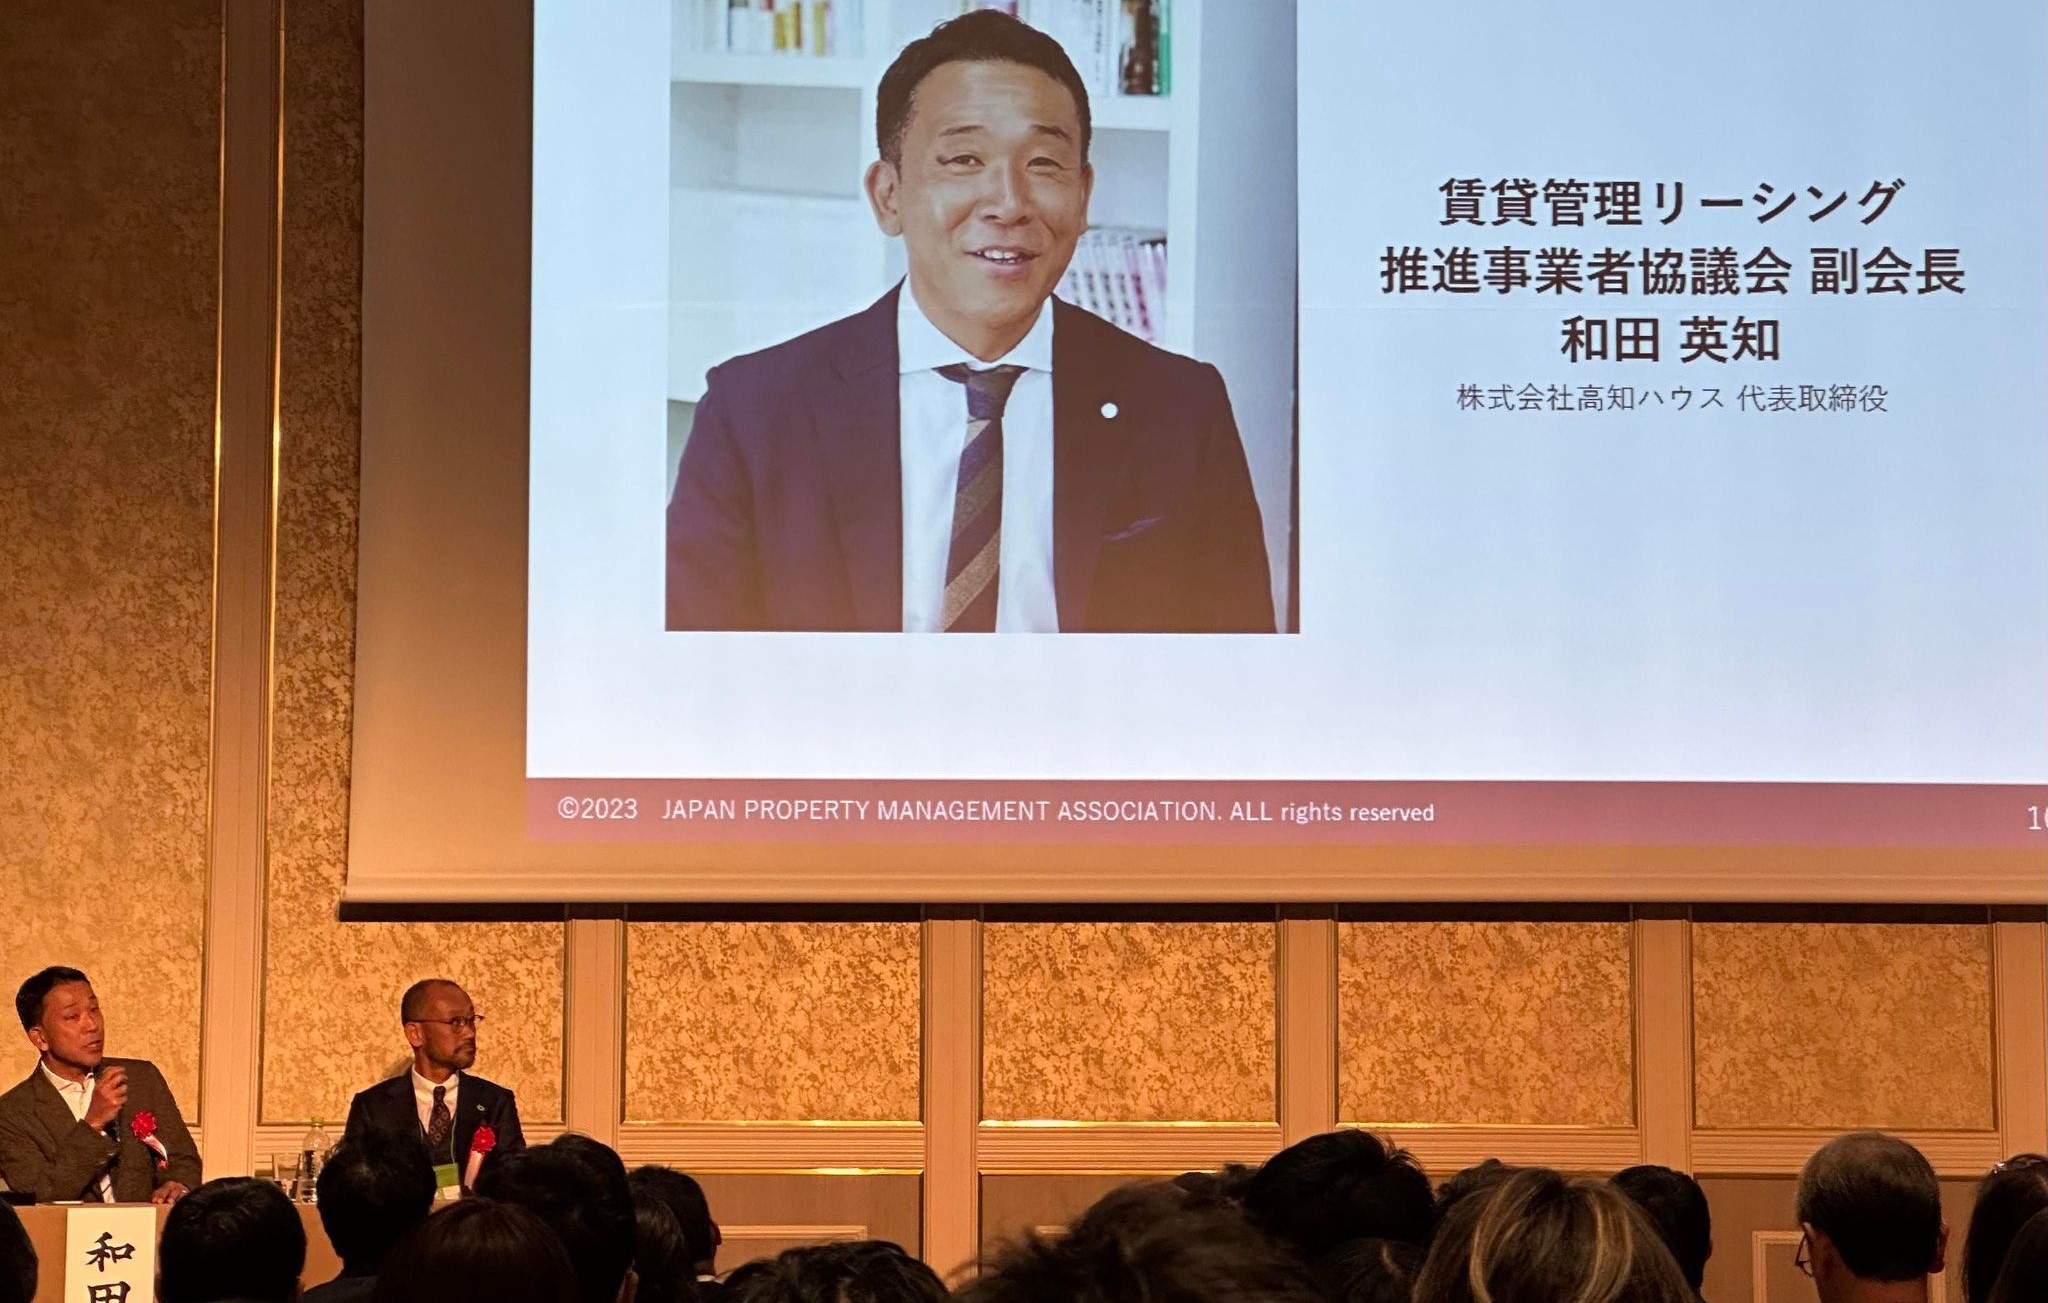 公益財団法人日本賃貸住宅管理協会主催の「日管協フォーラム2023」が開催されました